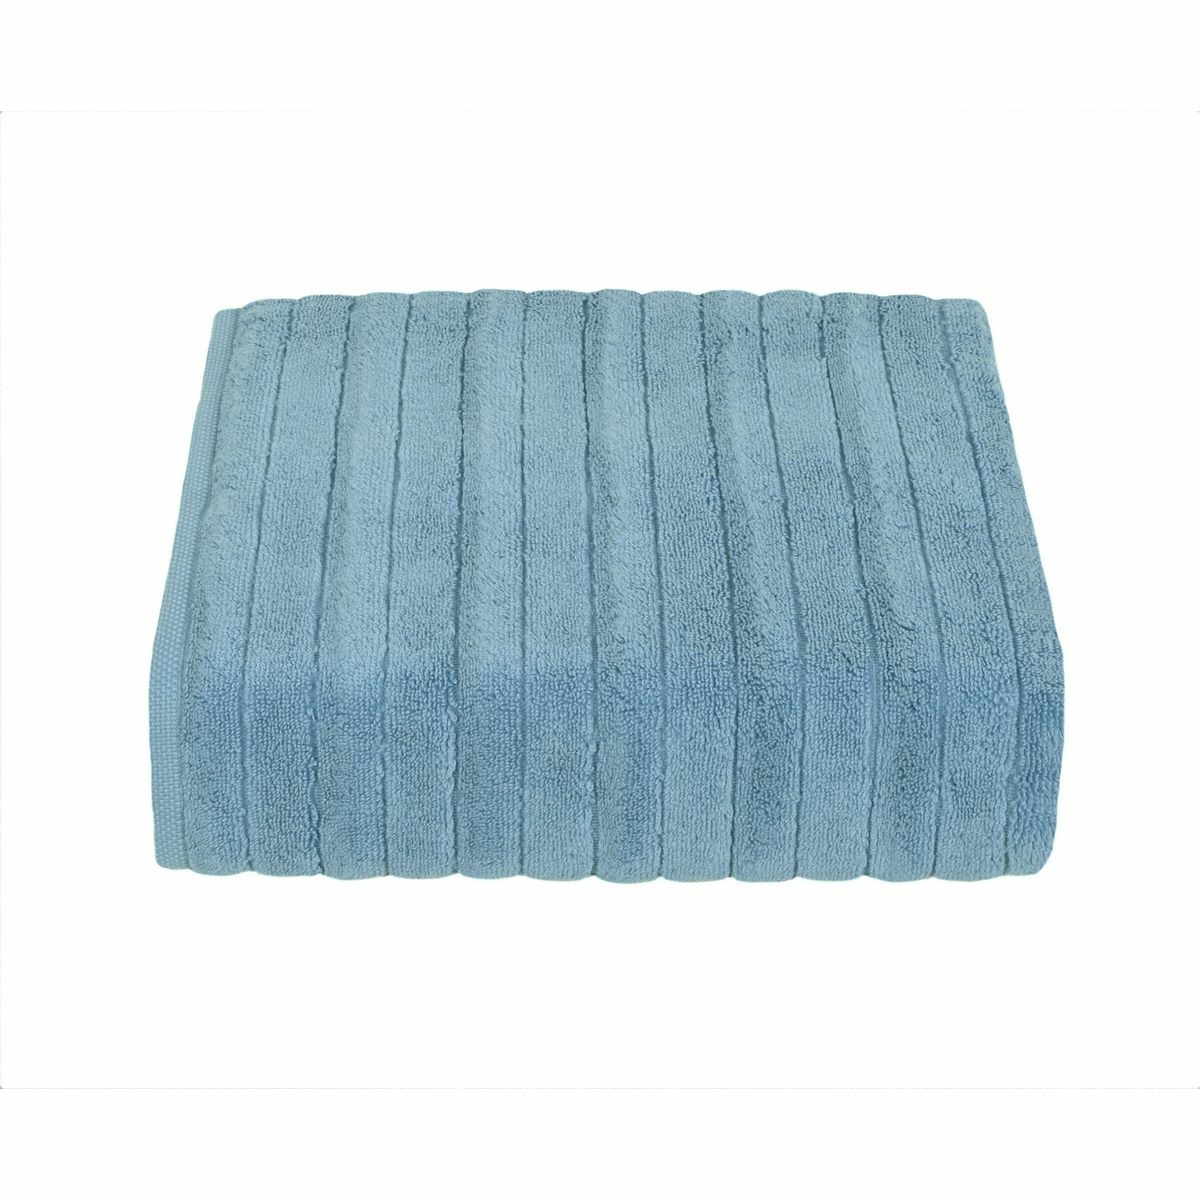 Ręcznik kąpielowy mikrobawełna DELUXE niebieski, 70 x 140 cm, 70 x 140 cm